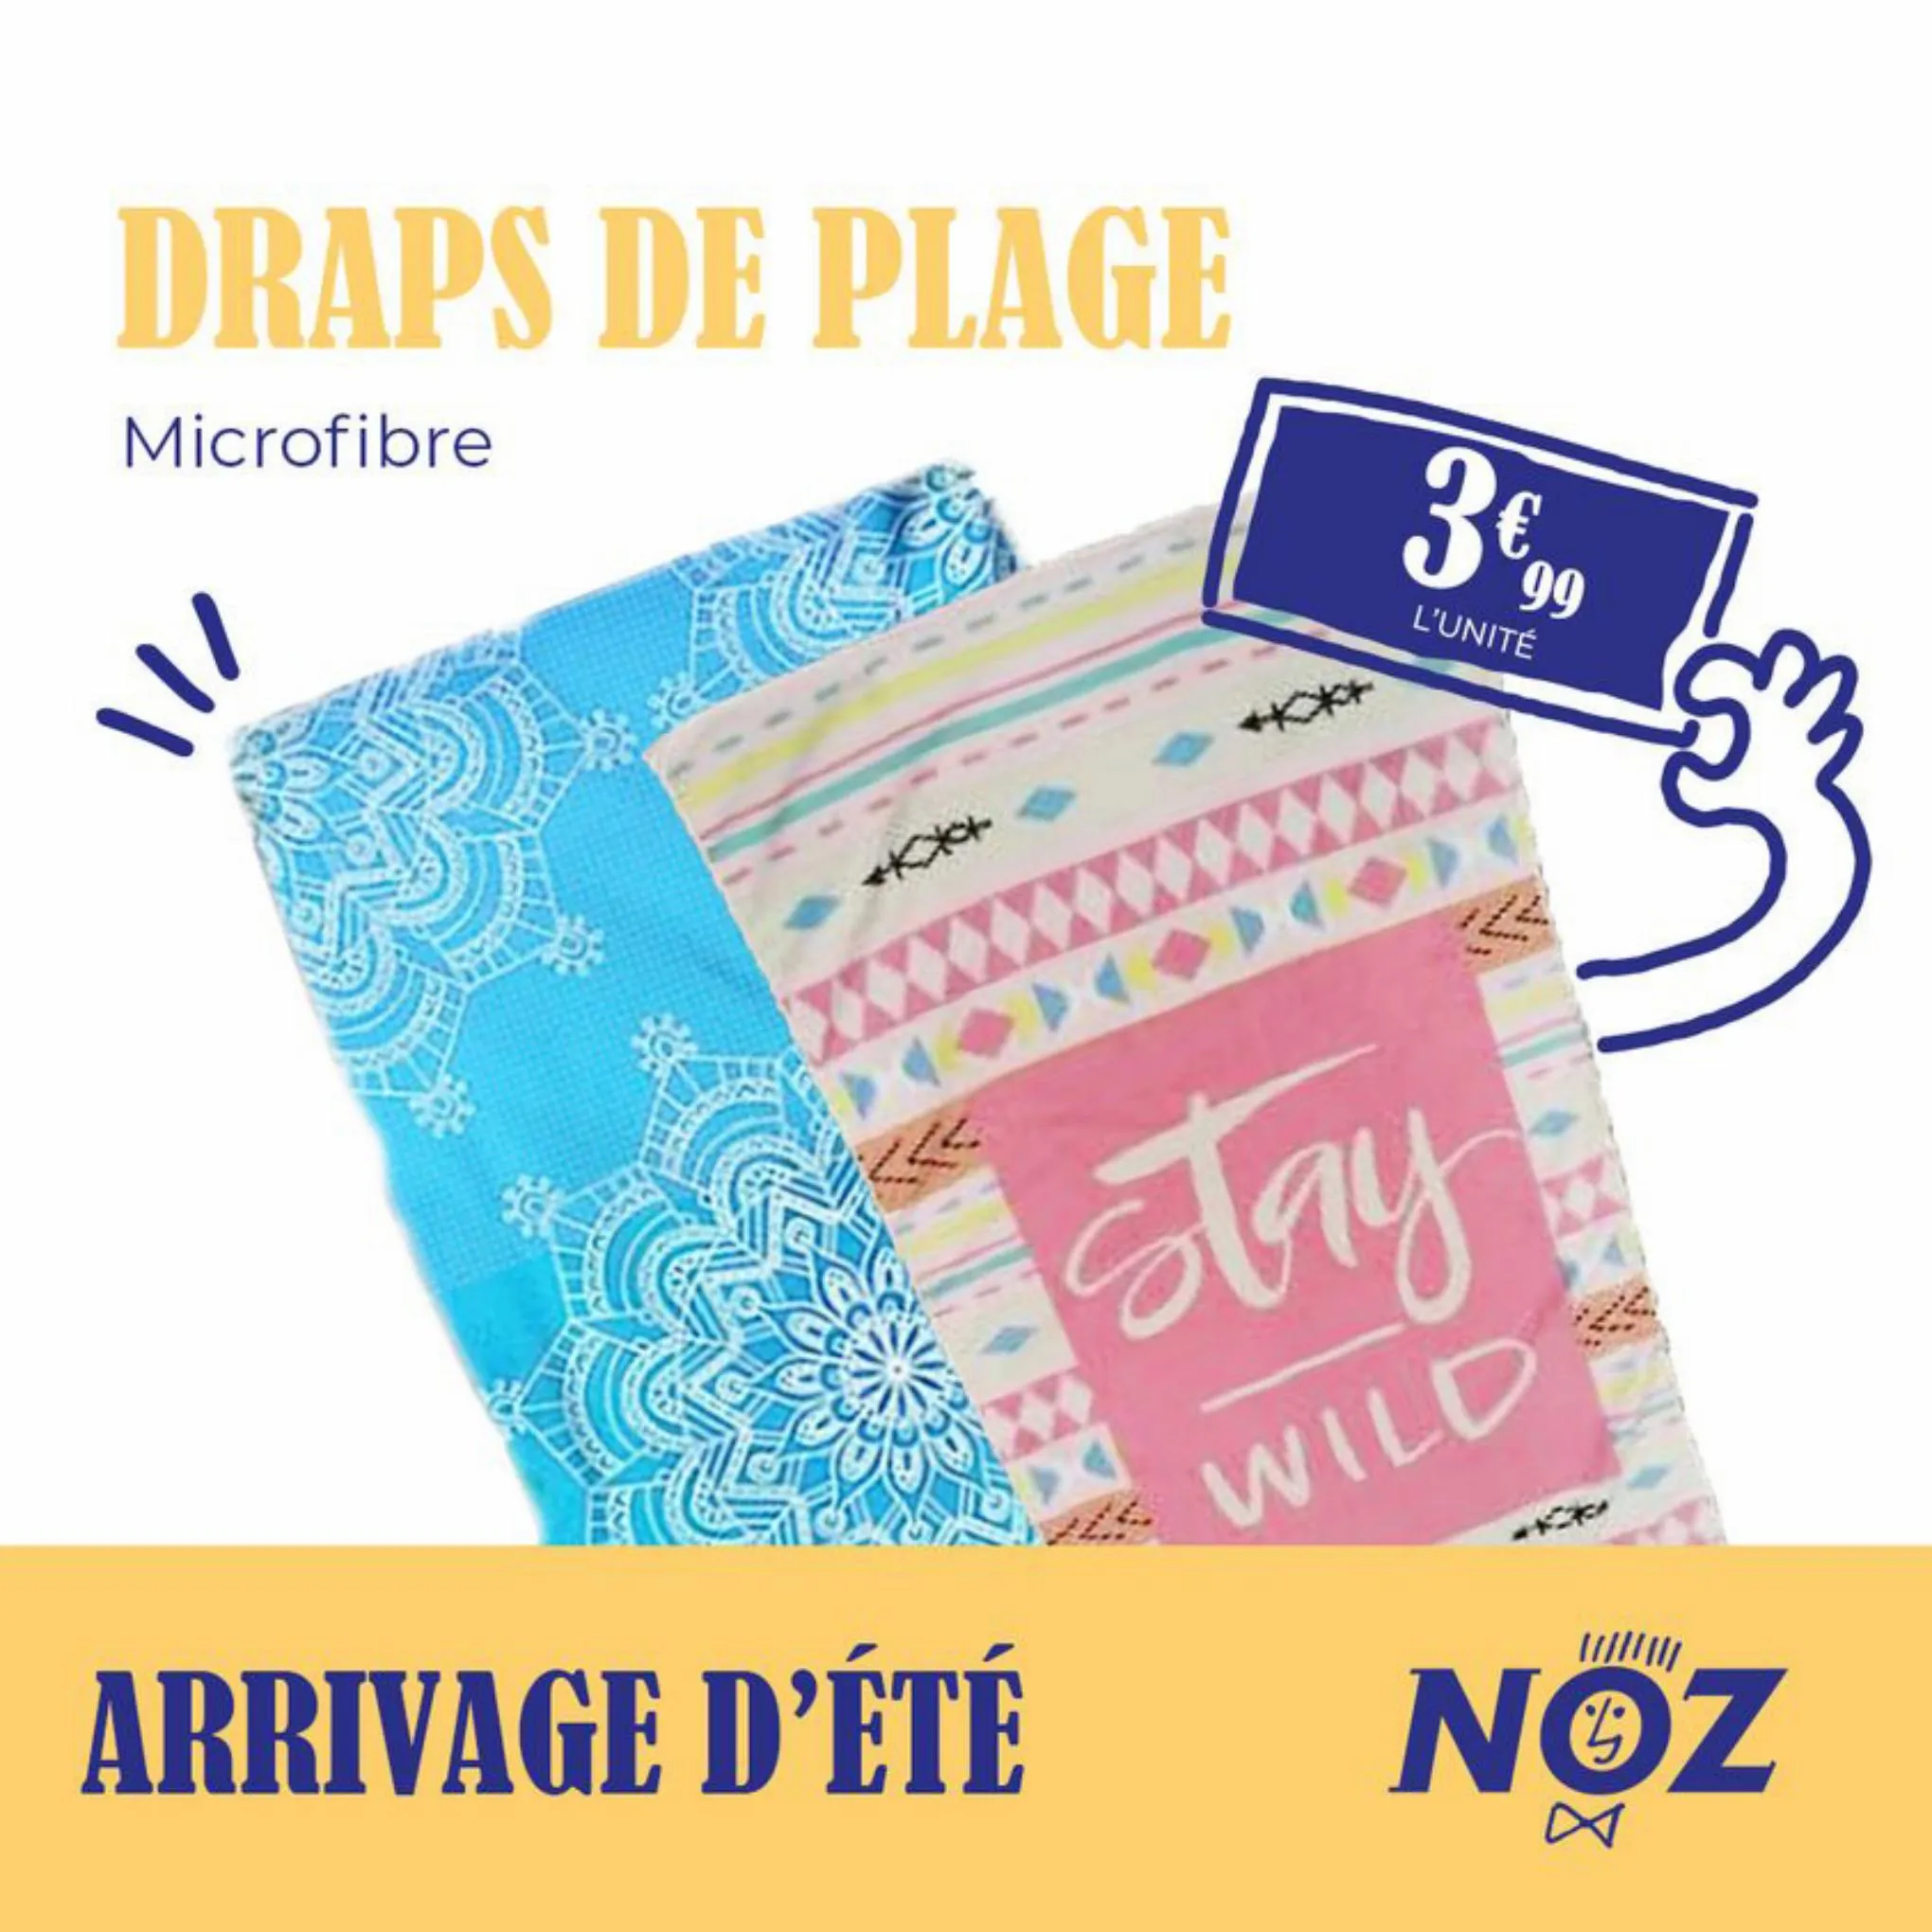 Catalogue Arrivage d'ete NOZ, page 00004